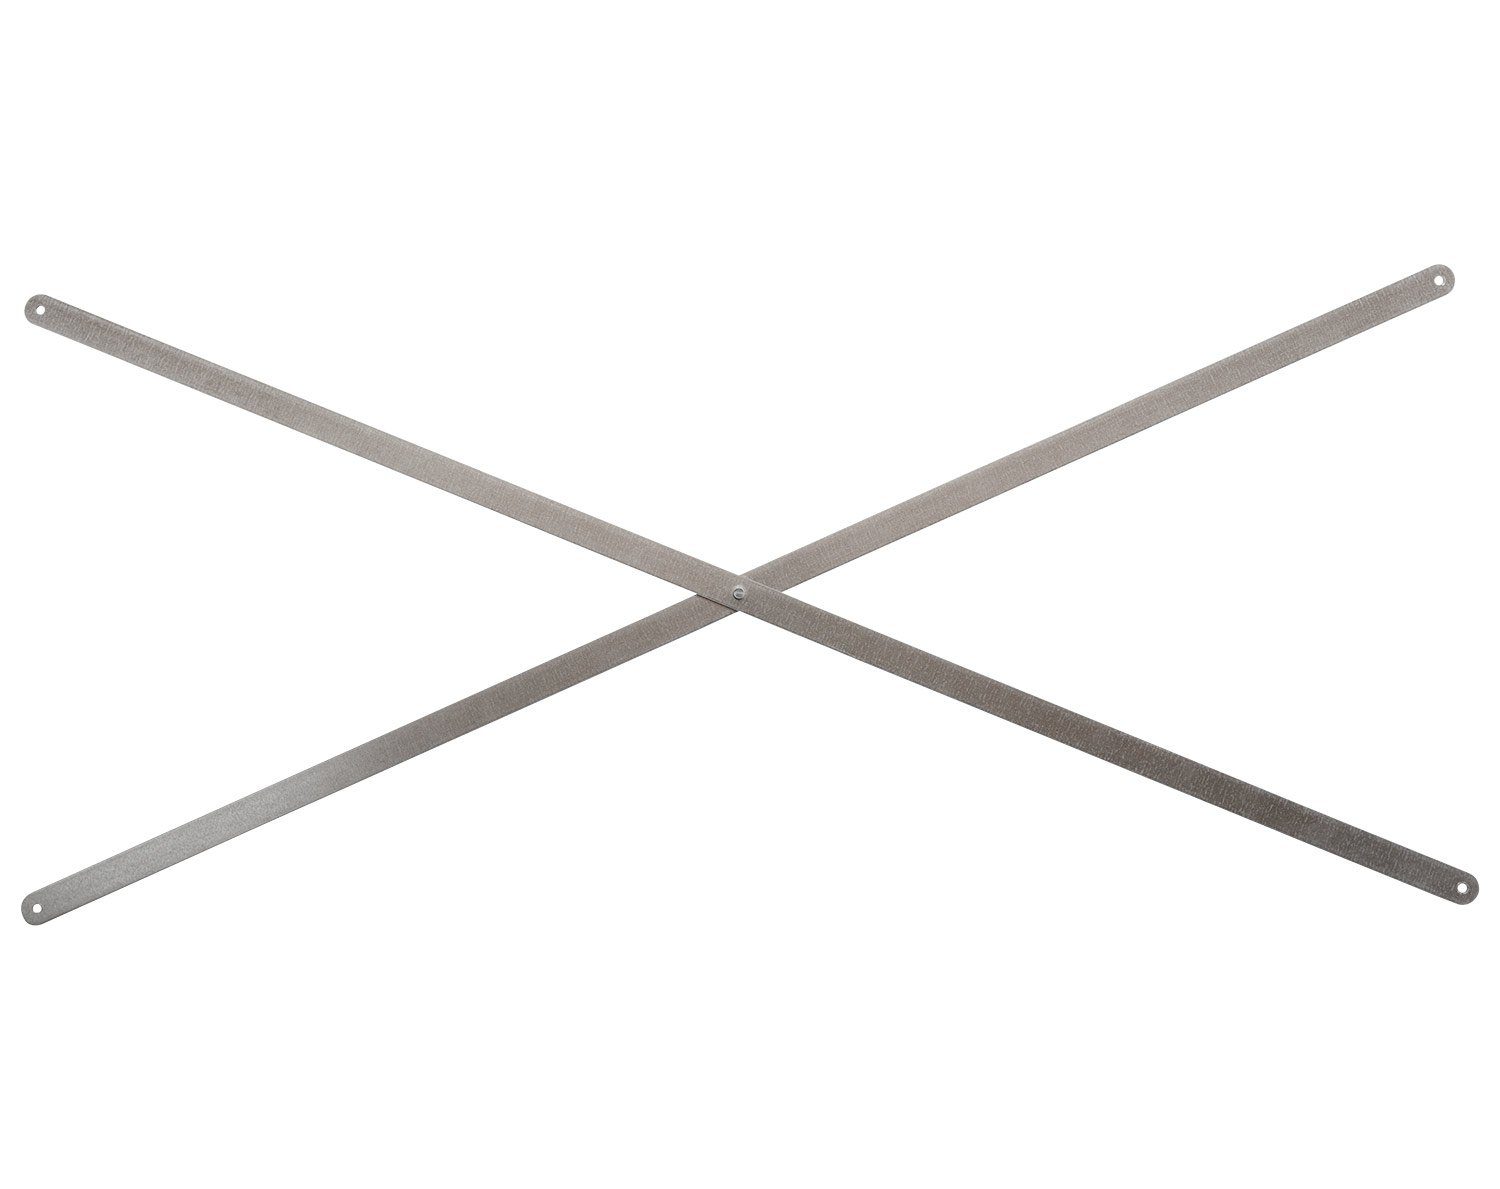 Regalelement Stabilisierungskreuz LASSE, Stahlblech, 93 von H cm, für 76 cm mit Regalbreite Regalsysteme einer